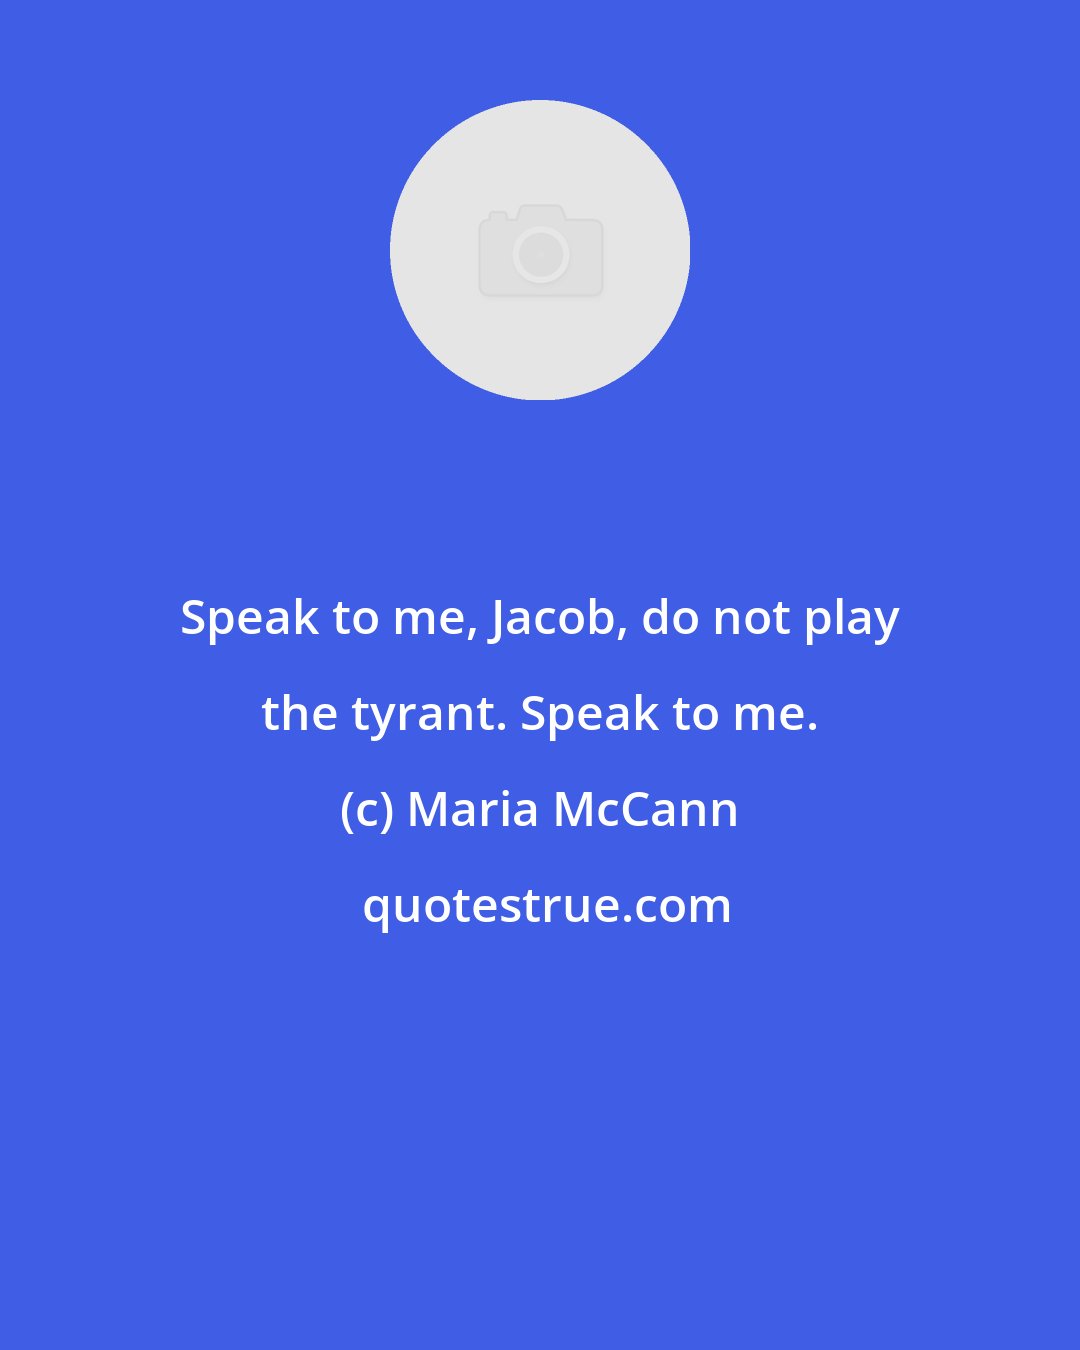 Maria McCann: Speak to me, Jacob, do not play the tyrant. Speak to me.